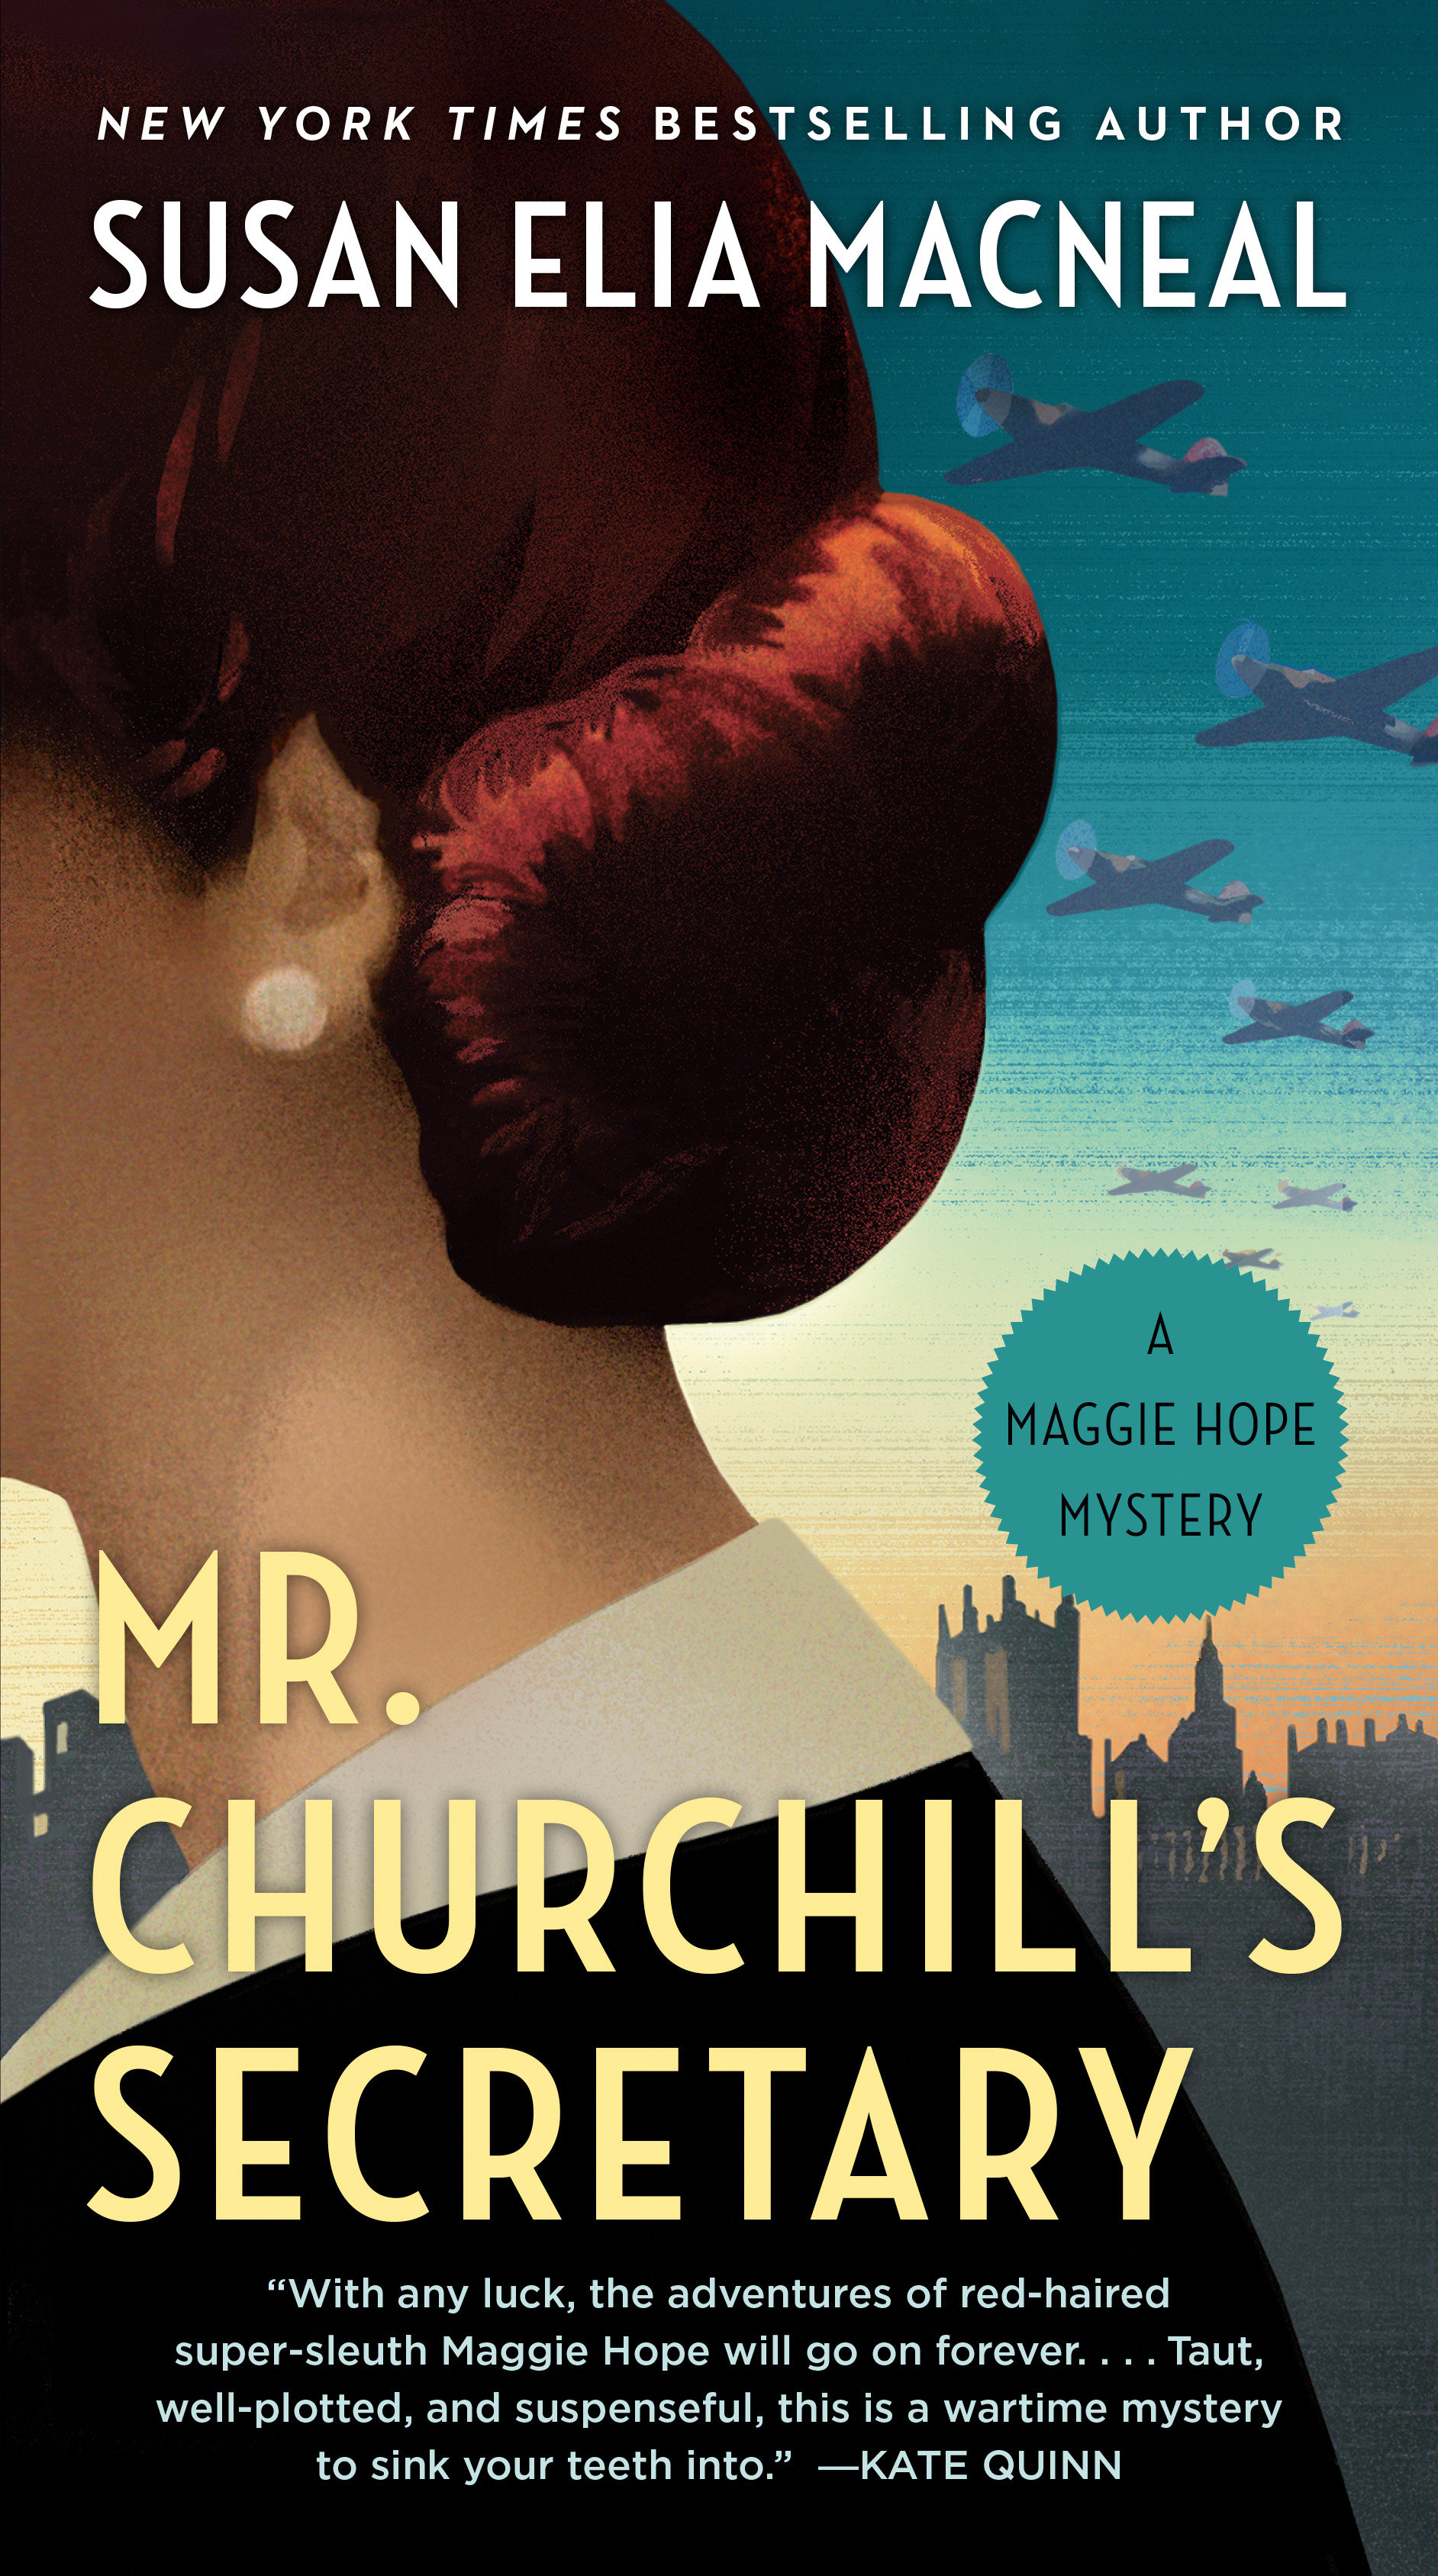 Mr. Churchill's secretary cover image